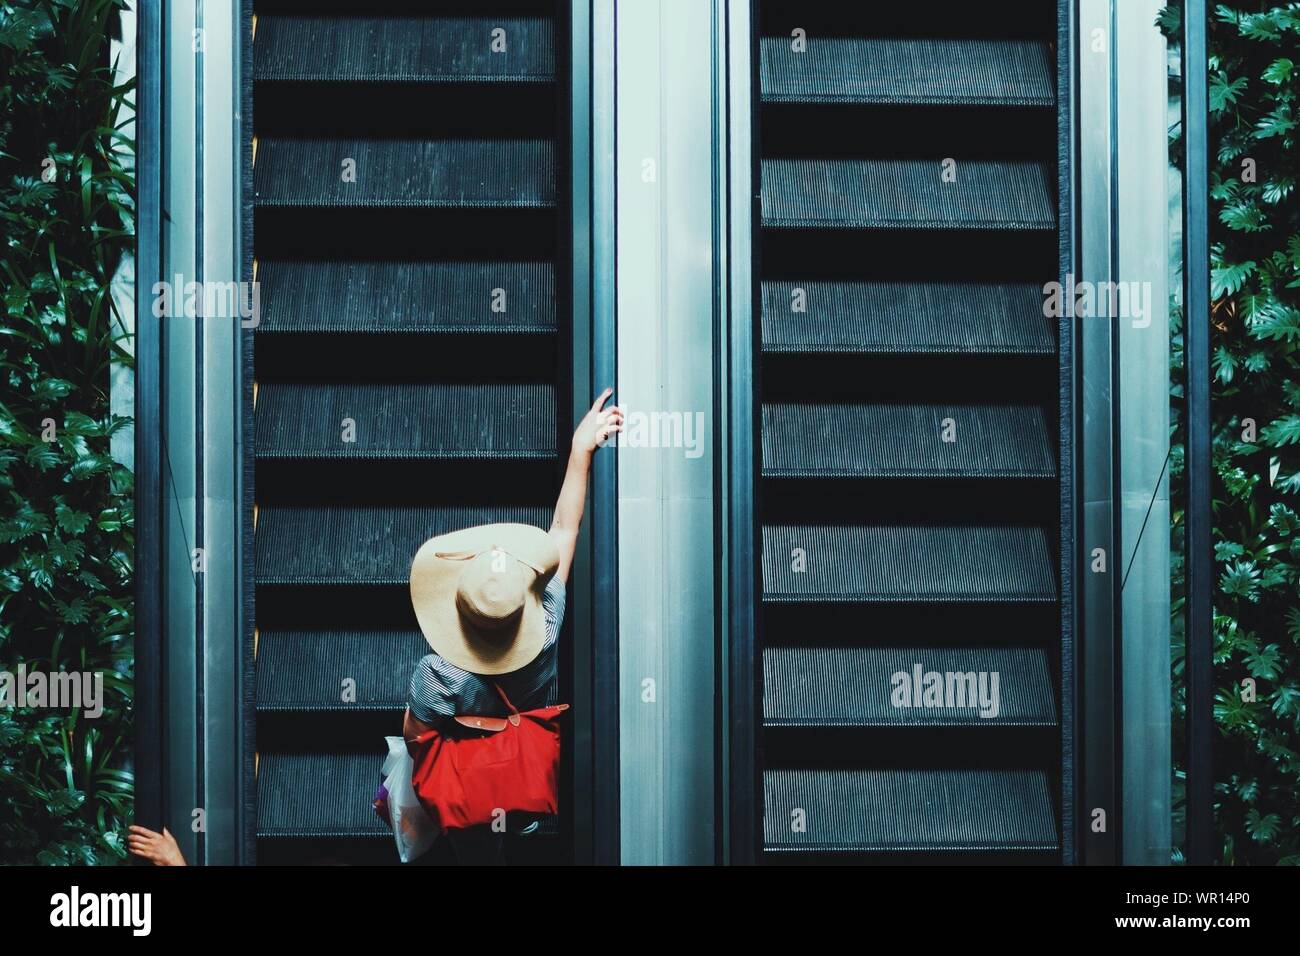 Persona in Escalator Foto Stock